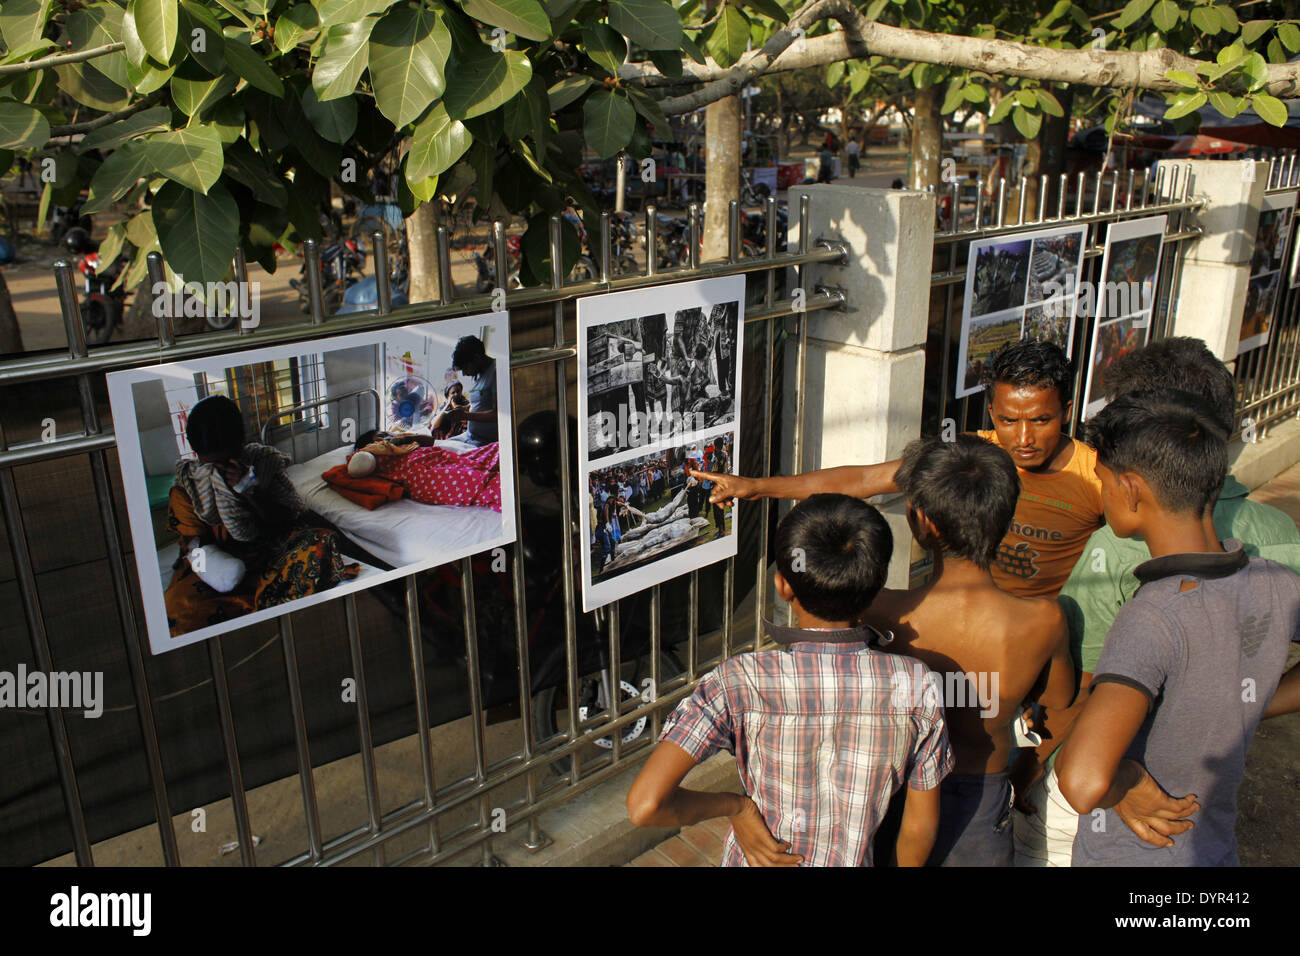 Dhaka, Bangladesch. 23. April 2014. Eine Gruppe von Fotojournalist her nationale & internationaler Medien in Bangladesch wird ein Jahr unvergessliche Tragödie von Rana Plaza, im Gedenken an seine Opfer durch die Veranstaltung einer Fotoausstellung mit dem Titel '' Aftermath: Rana Plaza'' Respekt zollen. Die Ausstellung eröffnet im 23. April 2014 bei Sohrawardi Uddyan, Dhaka.William Hanna, präsentierte Ambasedor Europäische Union Delegation nach Bangladesch als Chef Gast & Hanne Fugl Eskjaer, Botschafter der Botschaft von Dänemark in Bangladesch präsentiert als special Guest. (Kredit-Bild: © Zakir Hossain Chowdhury / Stockfoto